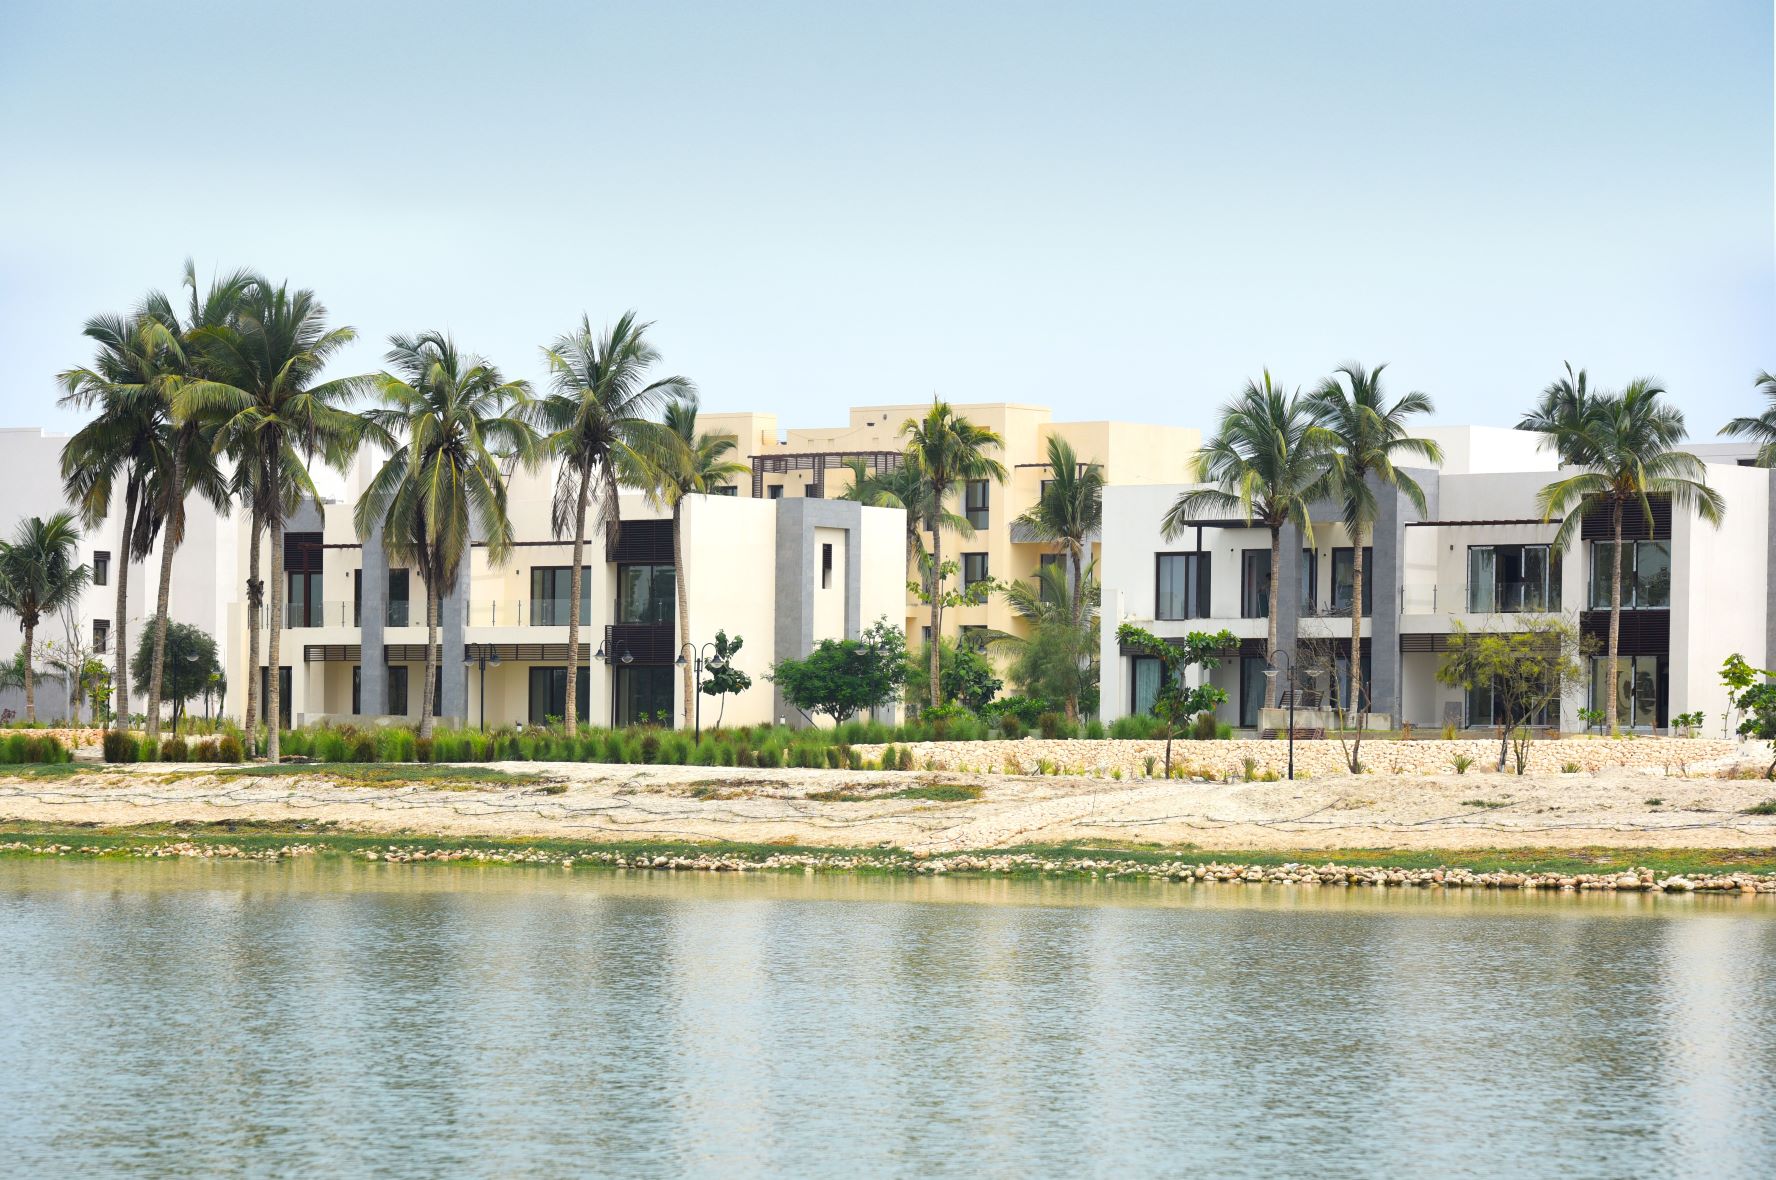 View of VIllas at Hawana Lagoons project overlooking the lagoon at Hawana Salalah Oman